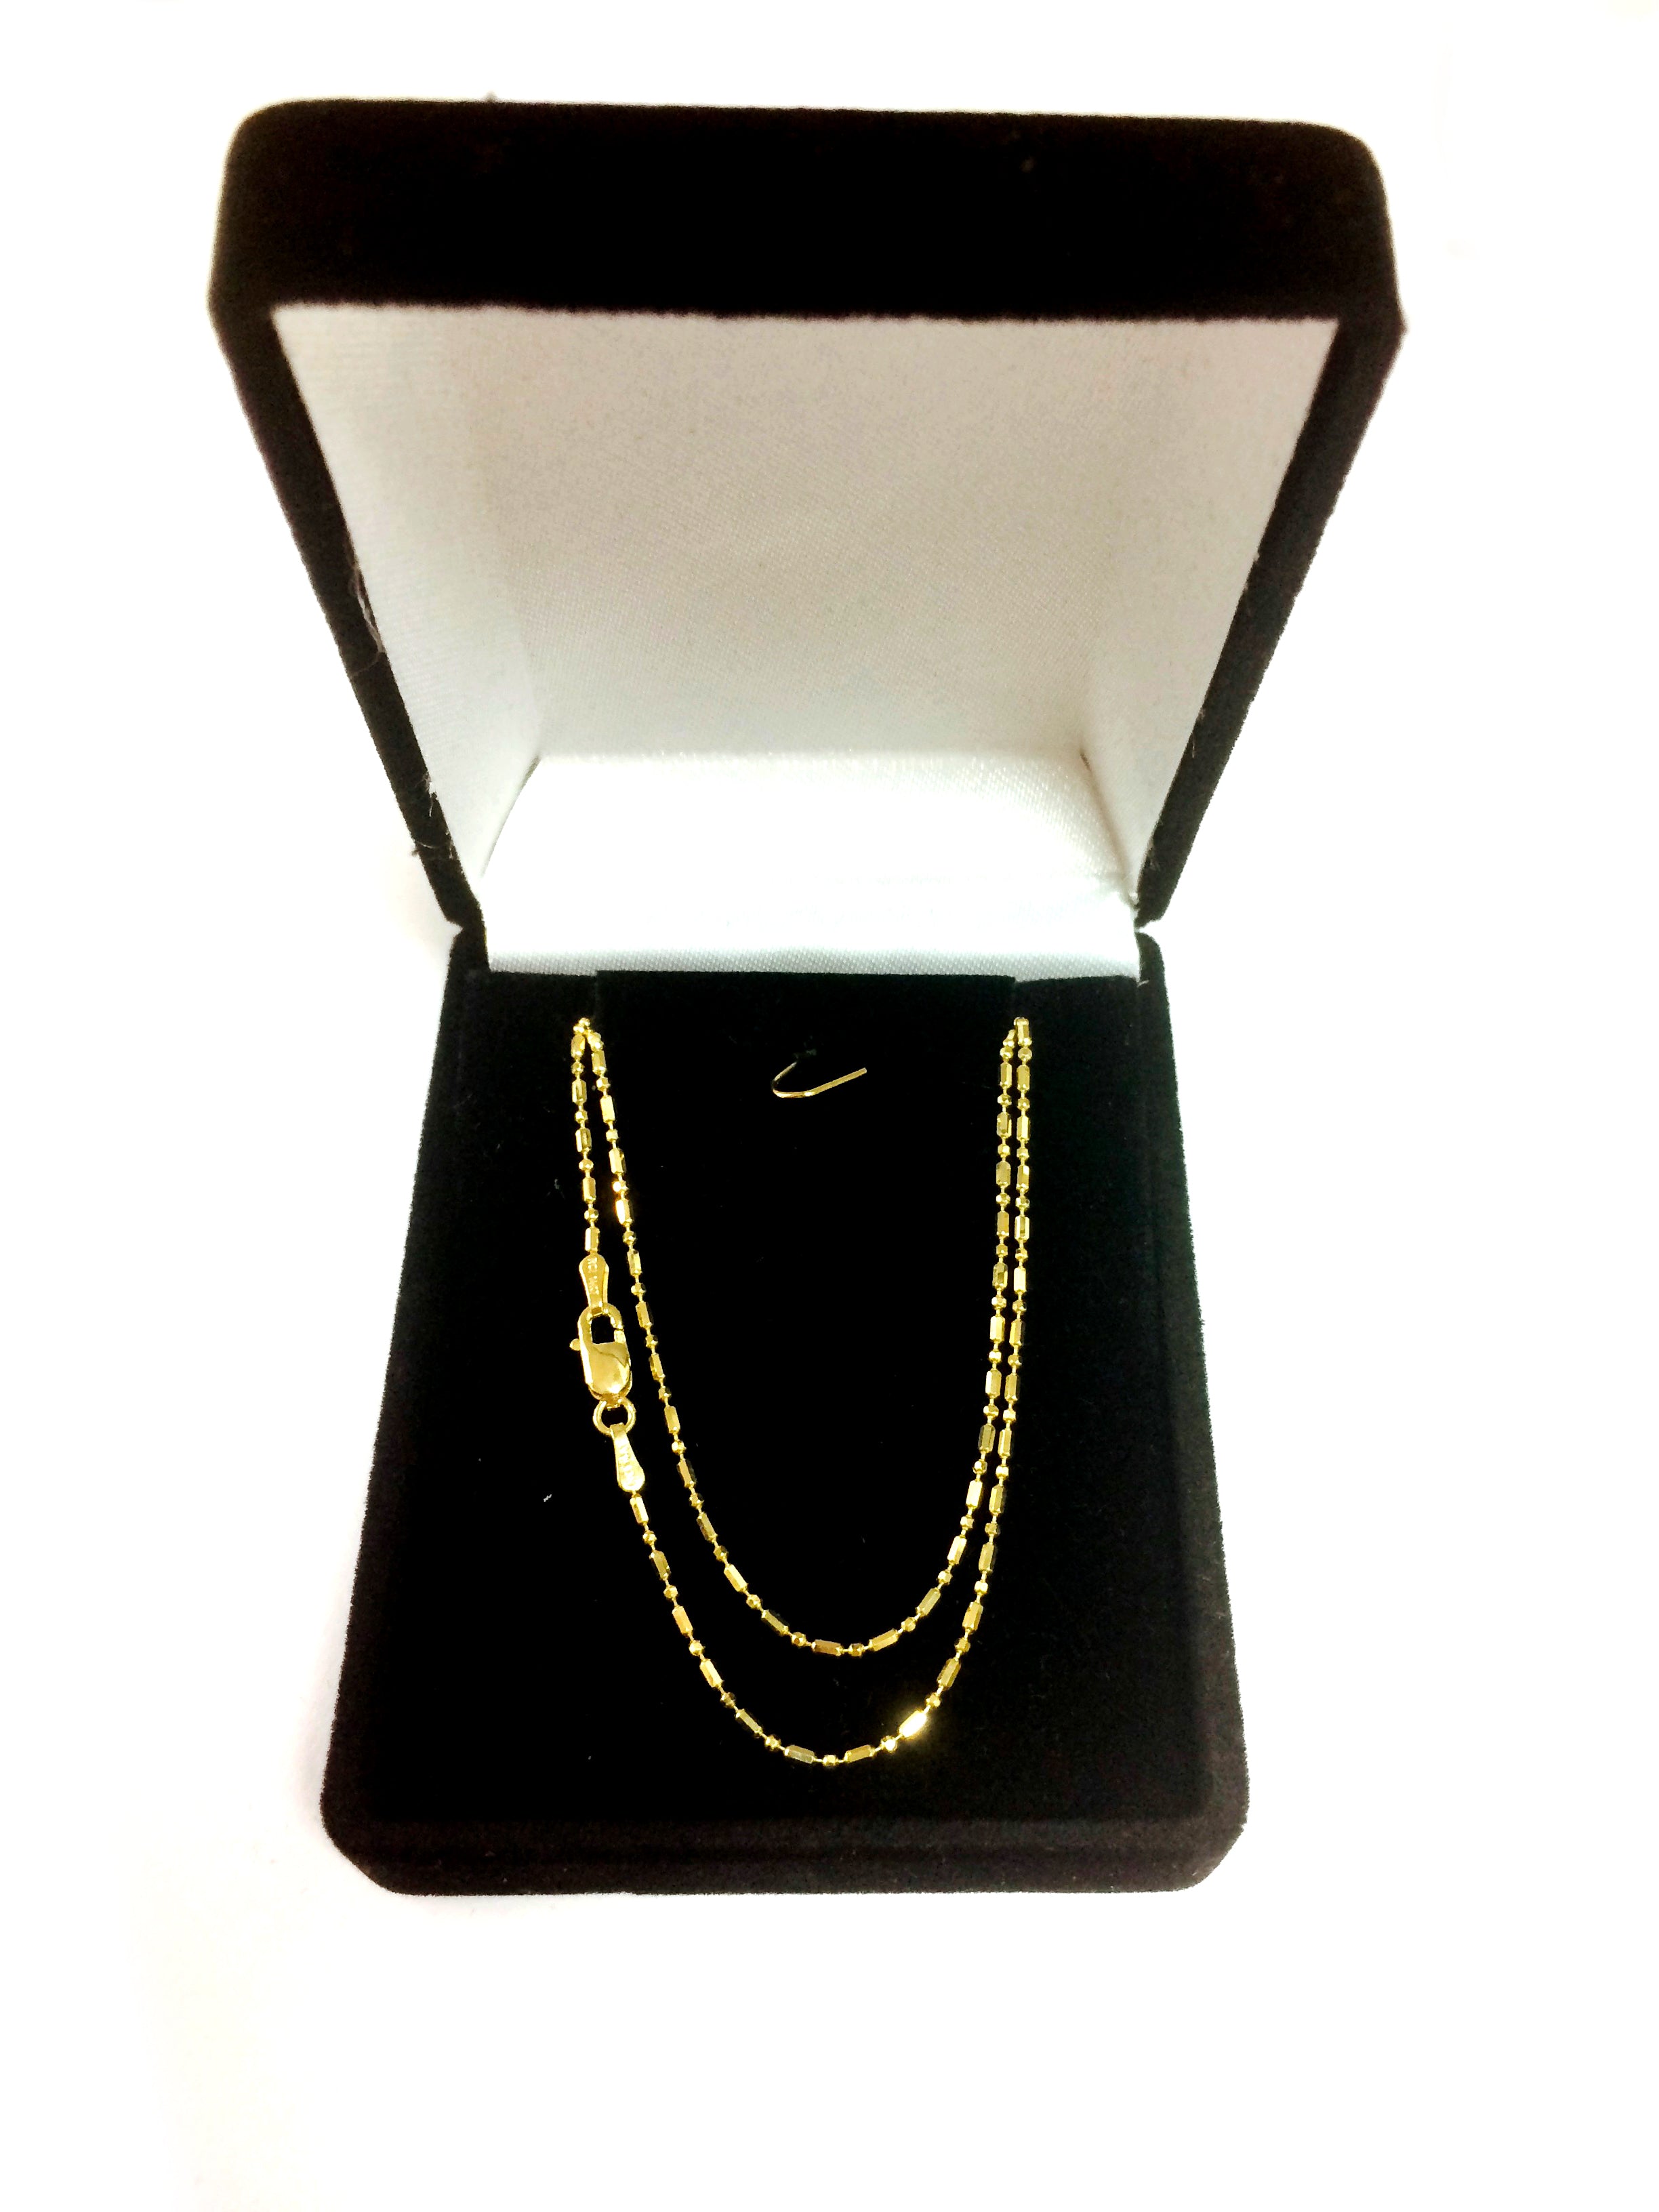 Collar de cadena con cuentas de talla diamante en oro amarillo de 14 k, joyería fina de diseño de 1,2 mm para hombres y mujeres